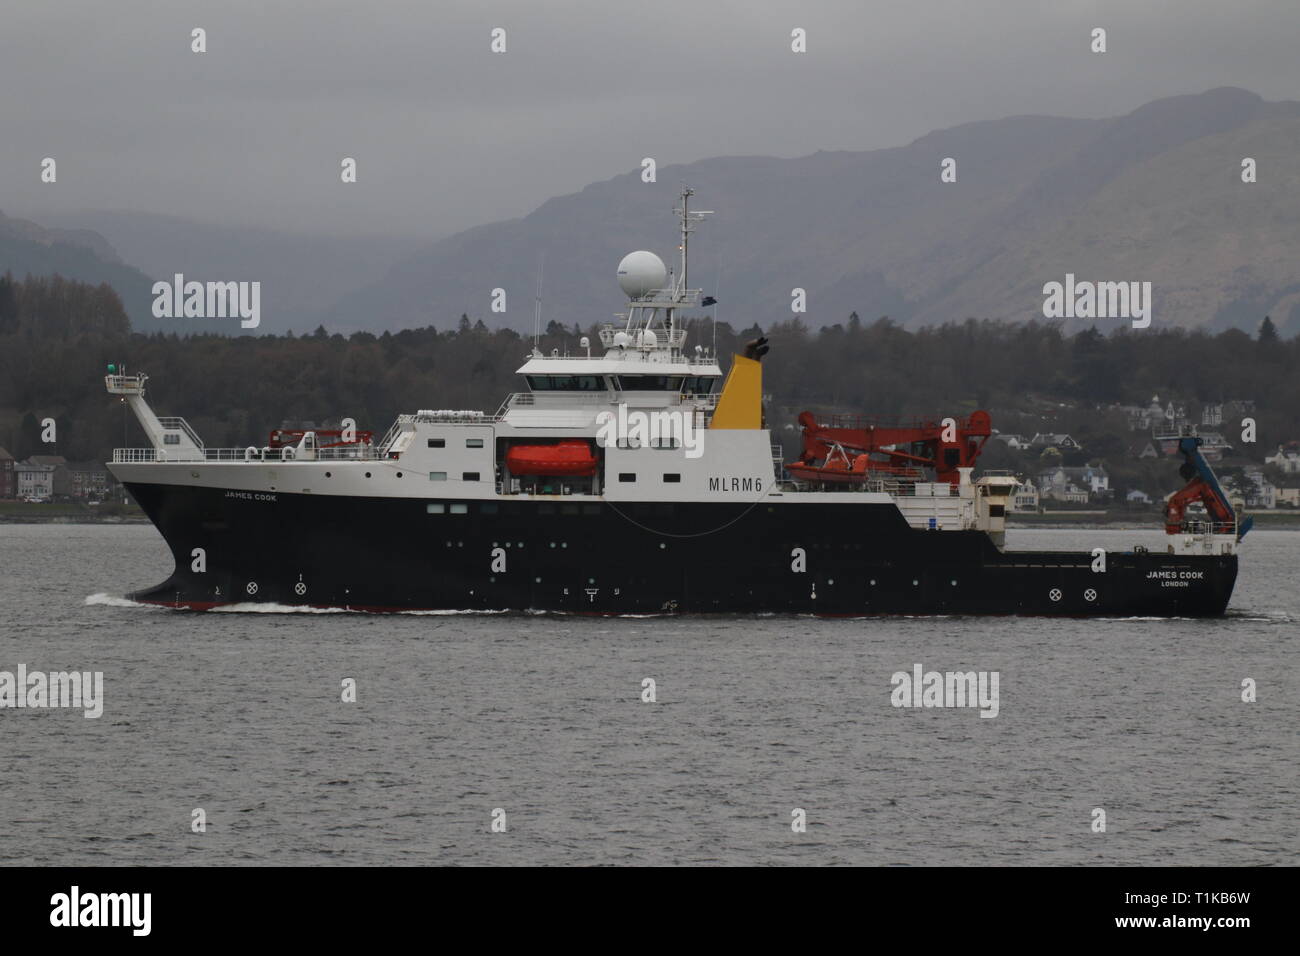 RRS James Cook, una nave di ricerca operata dal Consiglio di ricerca sull'ambiente naturale, nel viaggio di andata dopo una visita a Firth of Clyde. Foto Stock